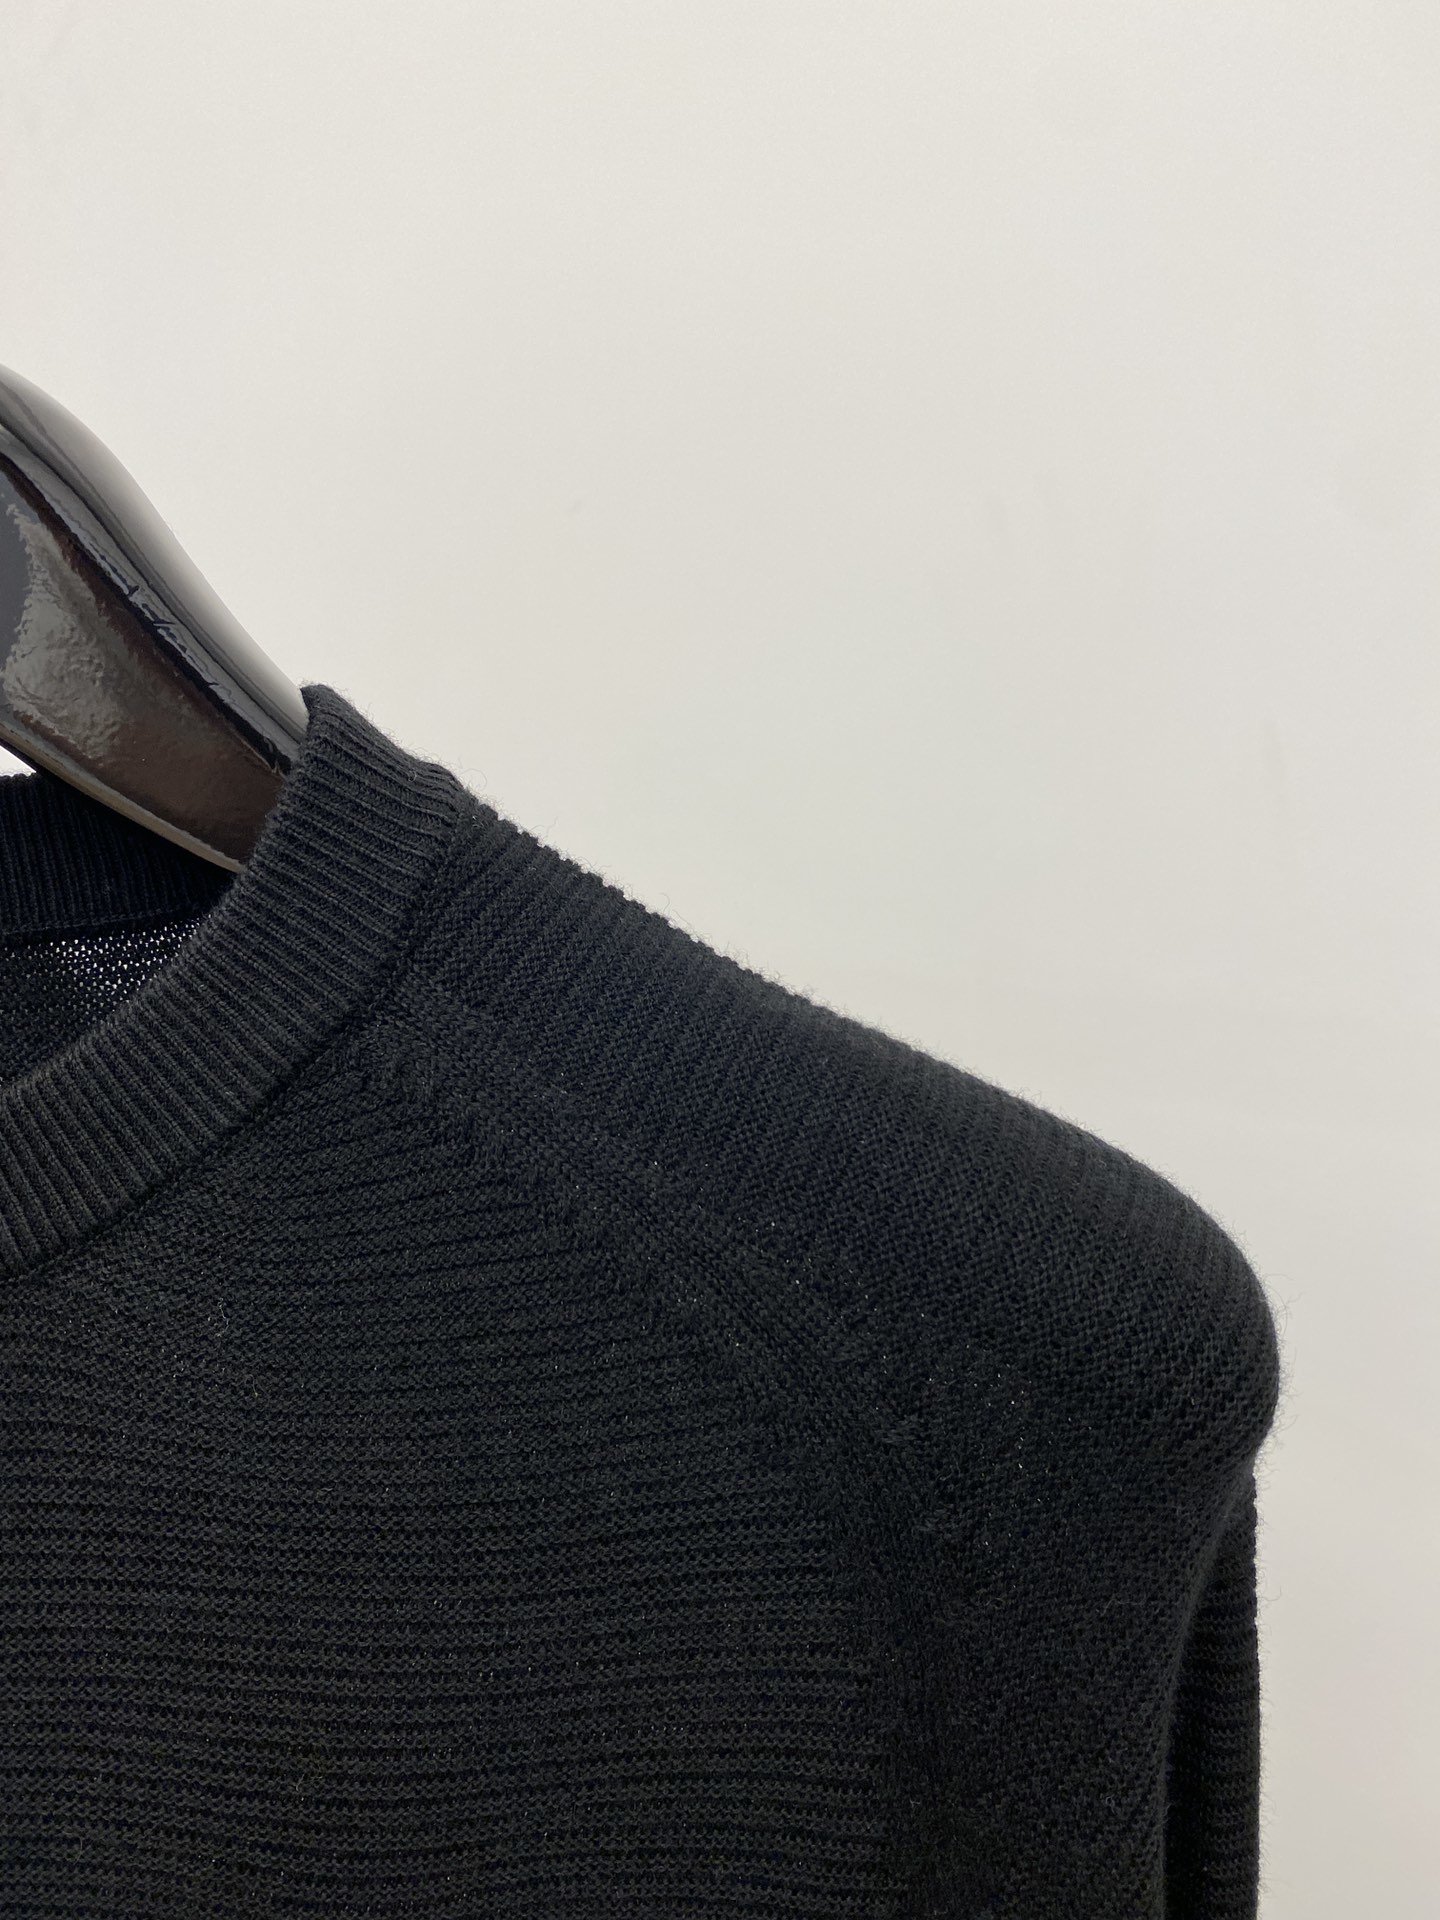 TB2023新品羊毛衣具有手感细腻柔软可直接与肌肤接触让暖心的纱线变化出细腻的质感顶级工艺极具特色出彩款